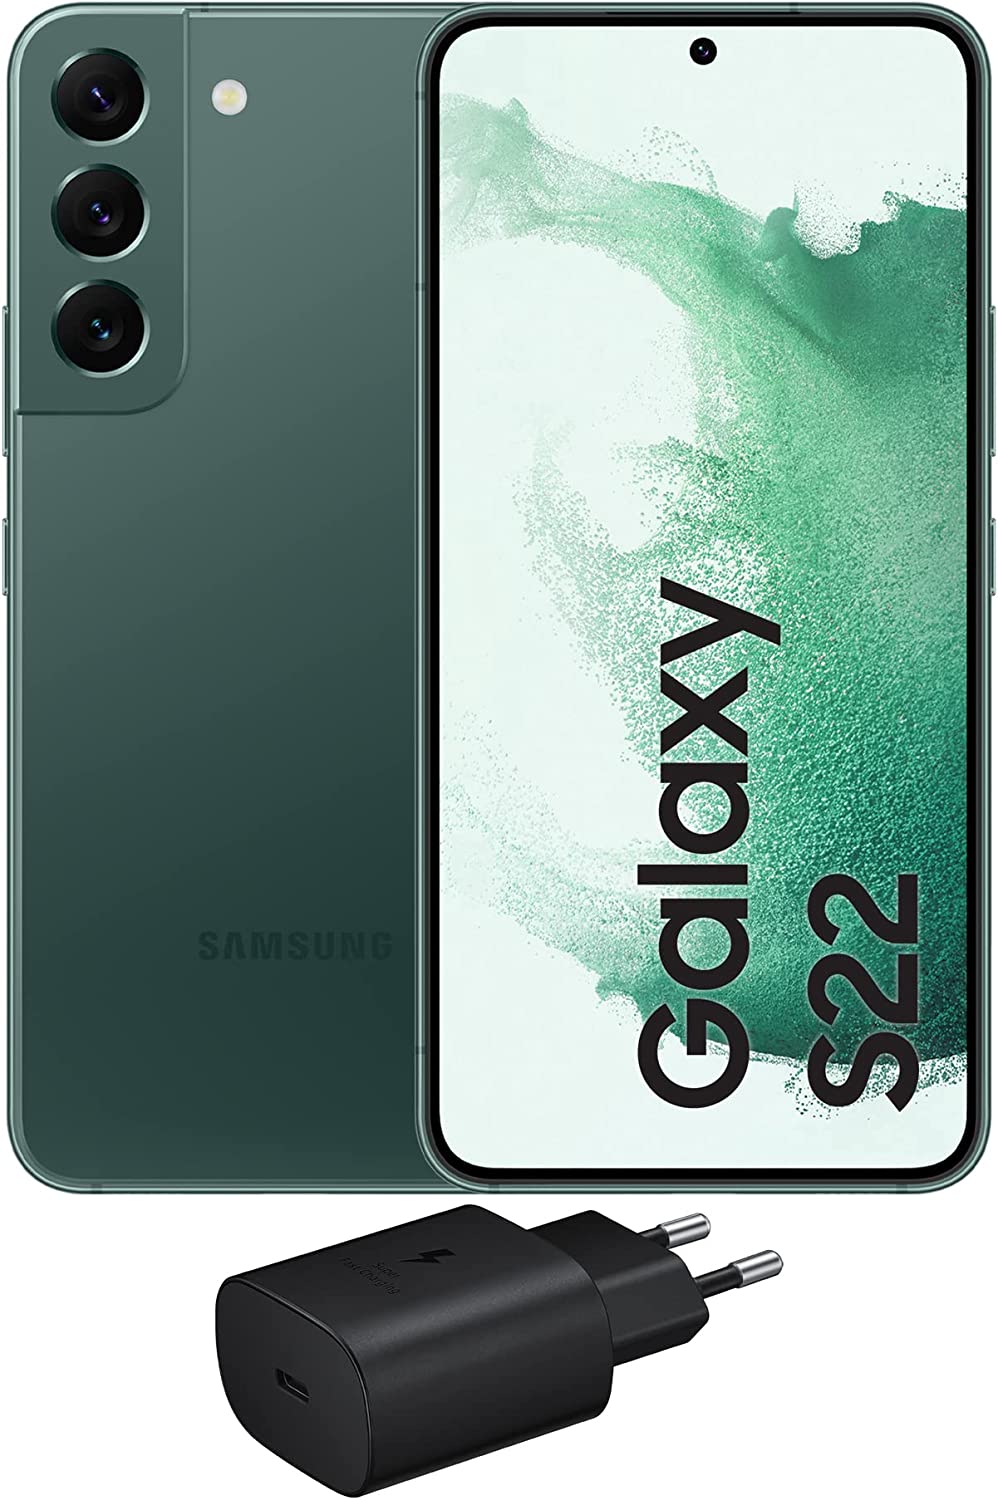 Samsung Galaxy S22 5G, Caricatore incluso, Cellulare Smartphone Android senza SIM 128GB